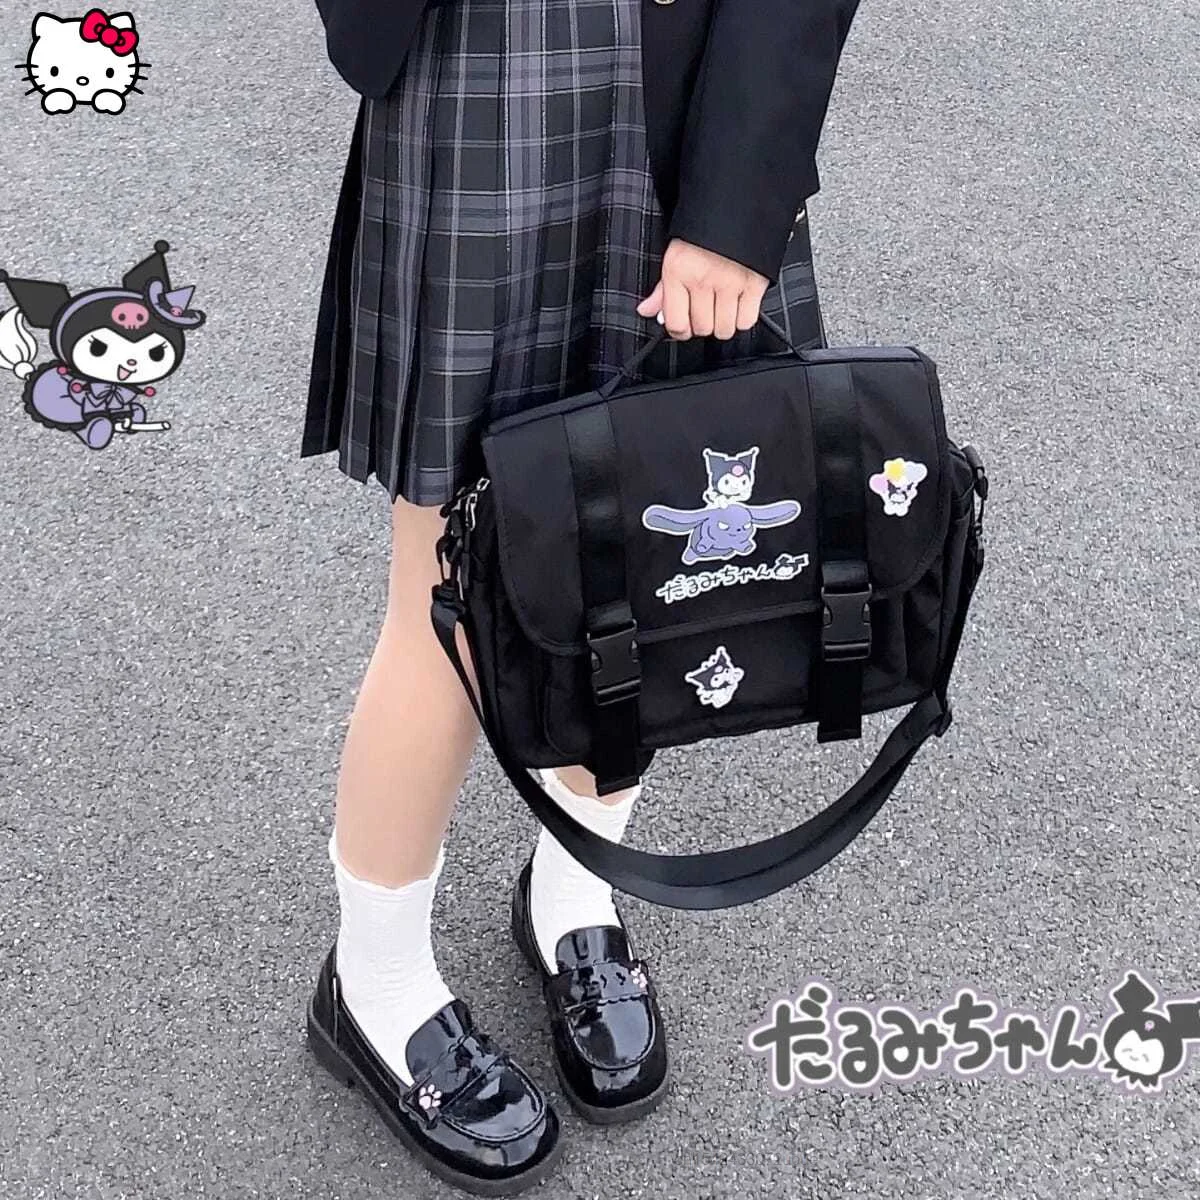 Original Design Sanrio Japanese Student Large Capacity Backpack Cute Kuromi Portable Diagonal Shoulder Bag Uniform Bag Versatile